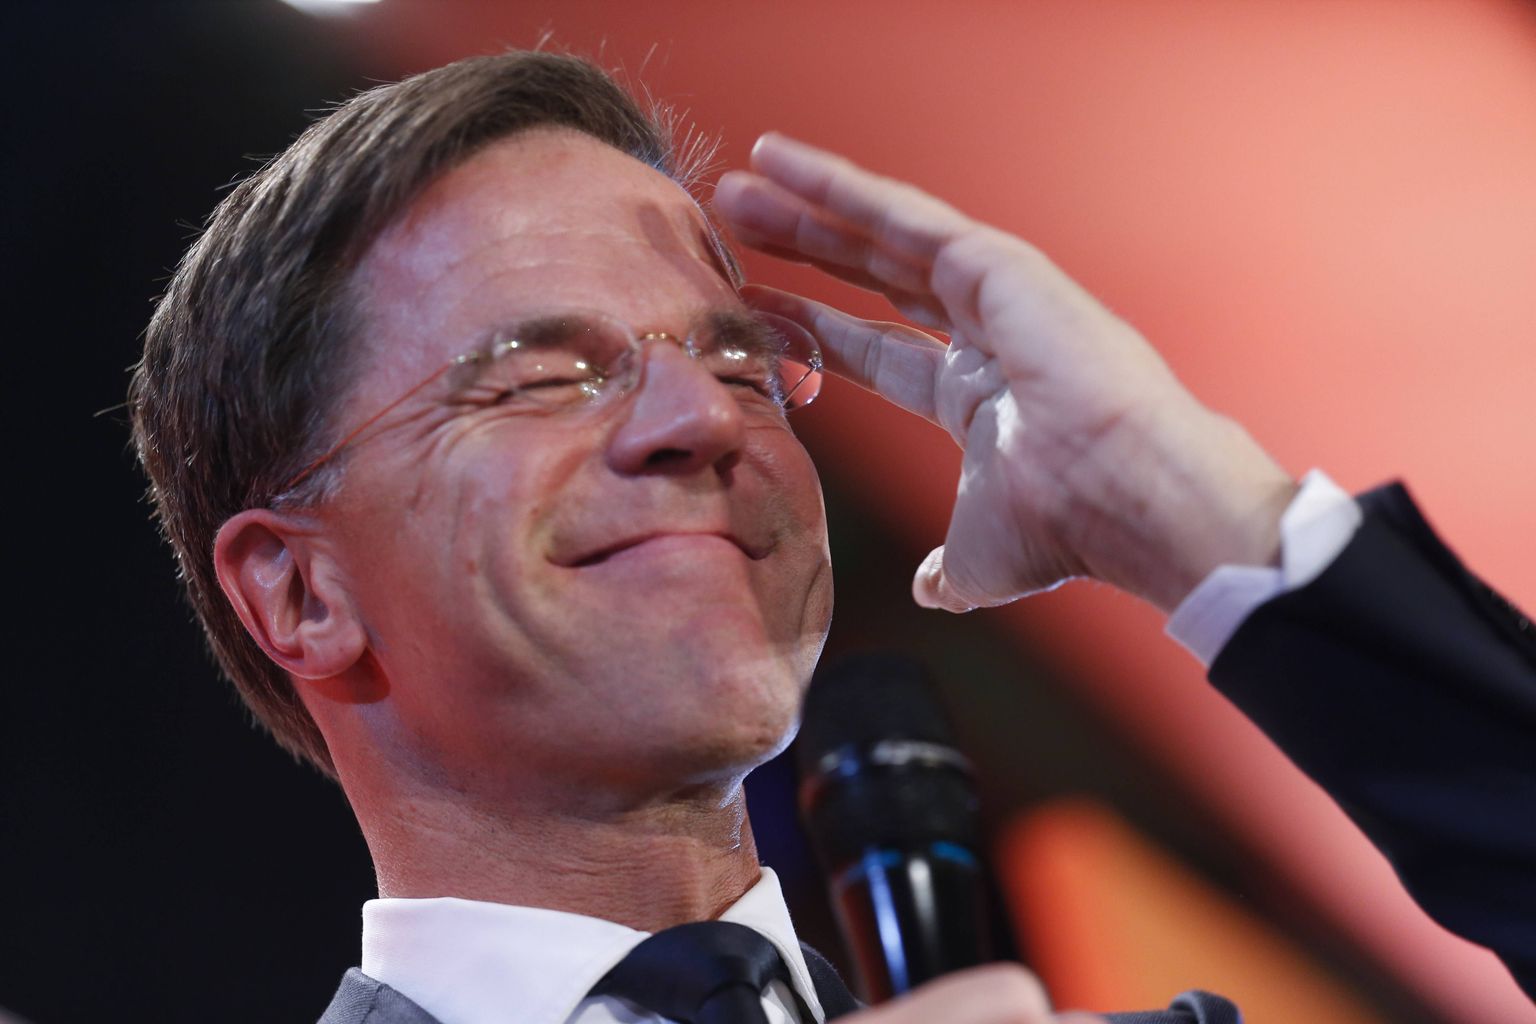 Hollandi üldvalimised võitis peaminister Mark Rutte liberaalne erakond.